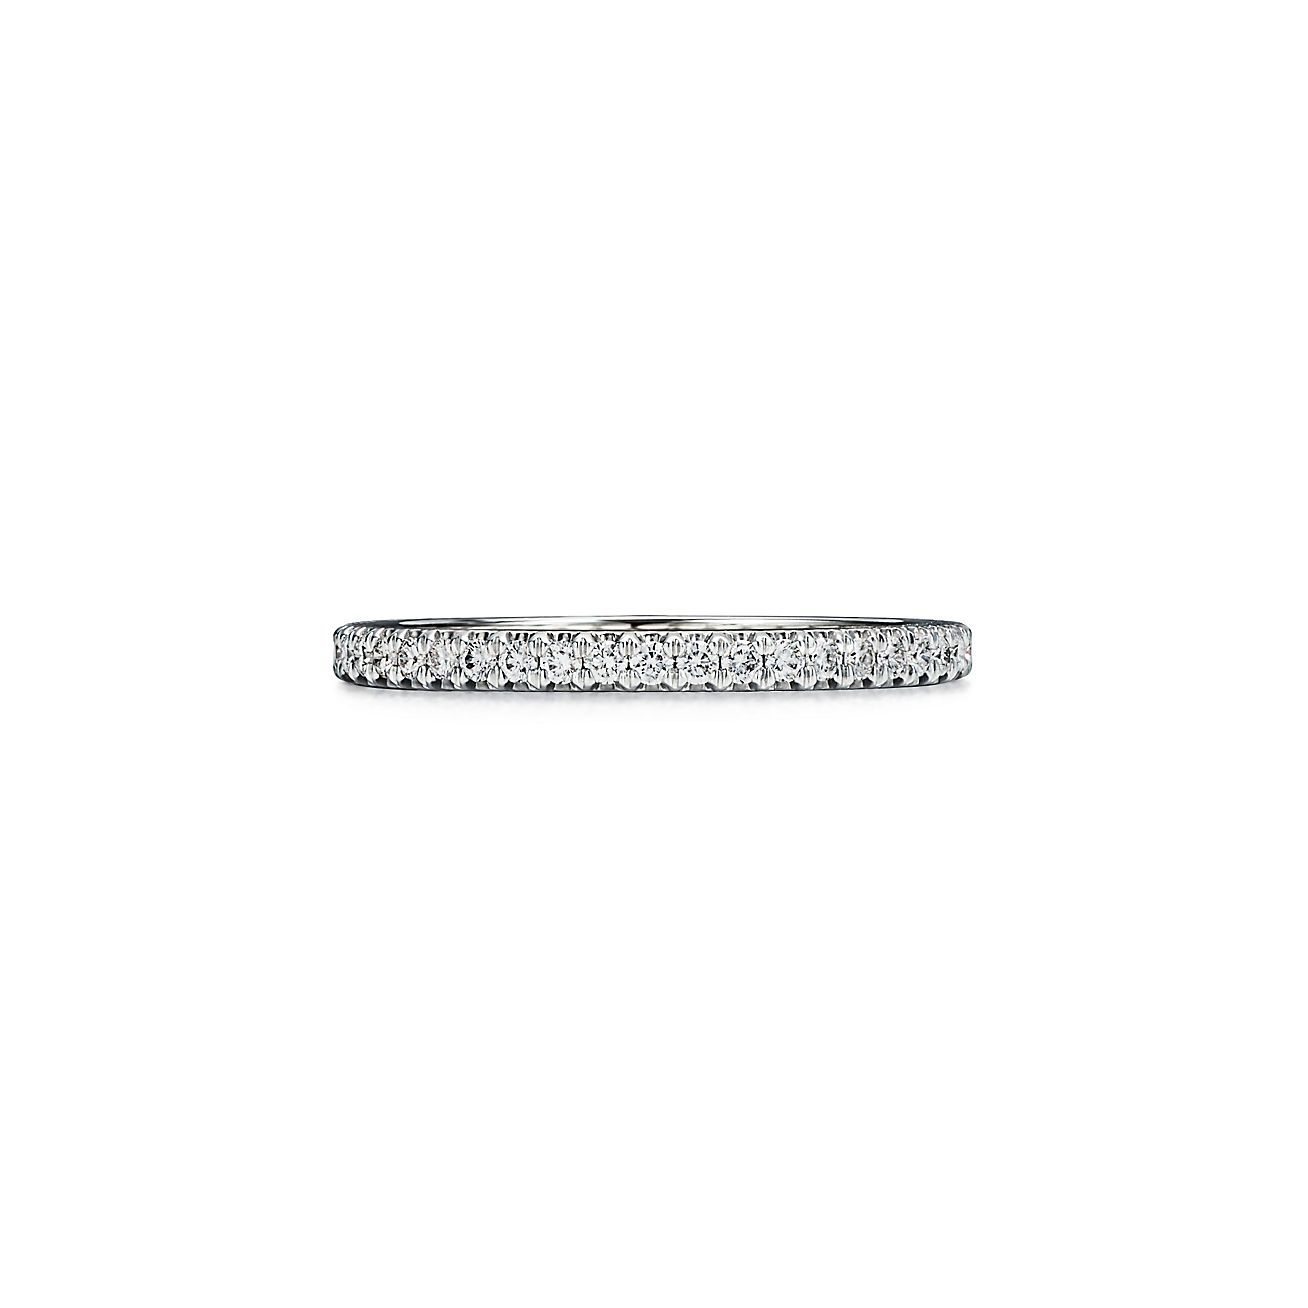 Bague Éternité tour complet Tiffany Soleste en platine 950 millièmes et diamants - Size 6 Tiffany & Co.